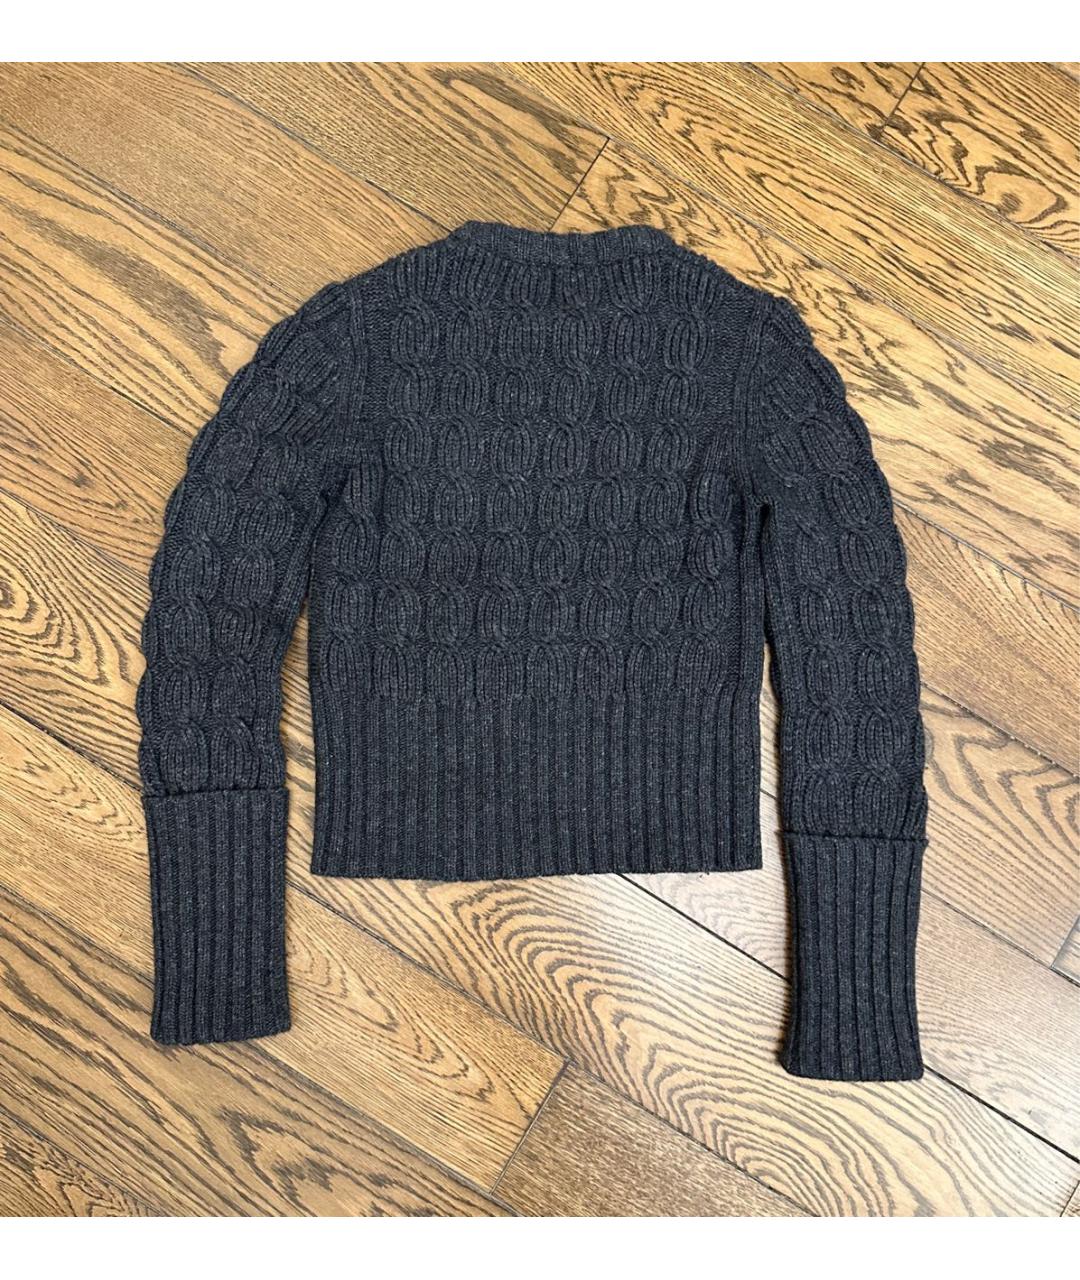 MICHAEL KORS Серый шерстяной джемпер / свитер, фото 2